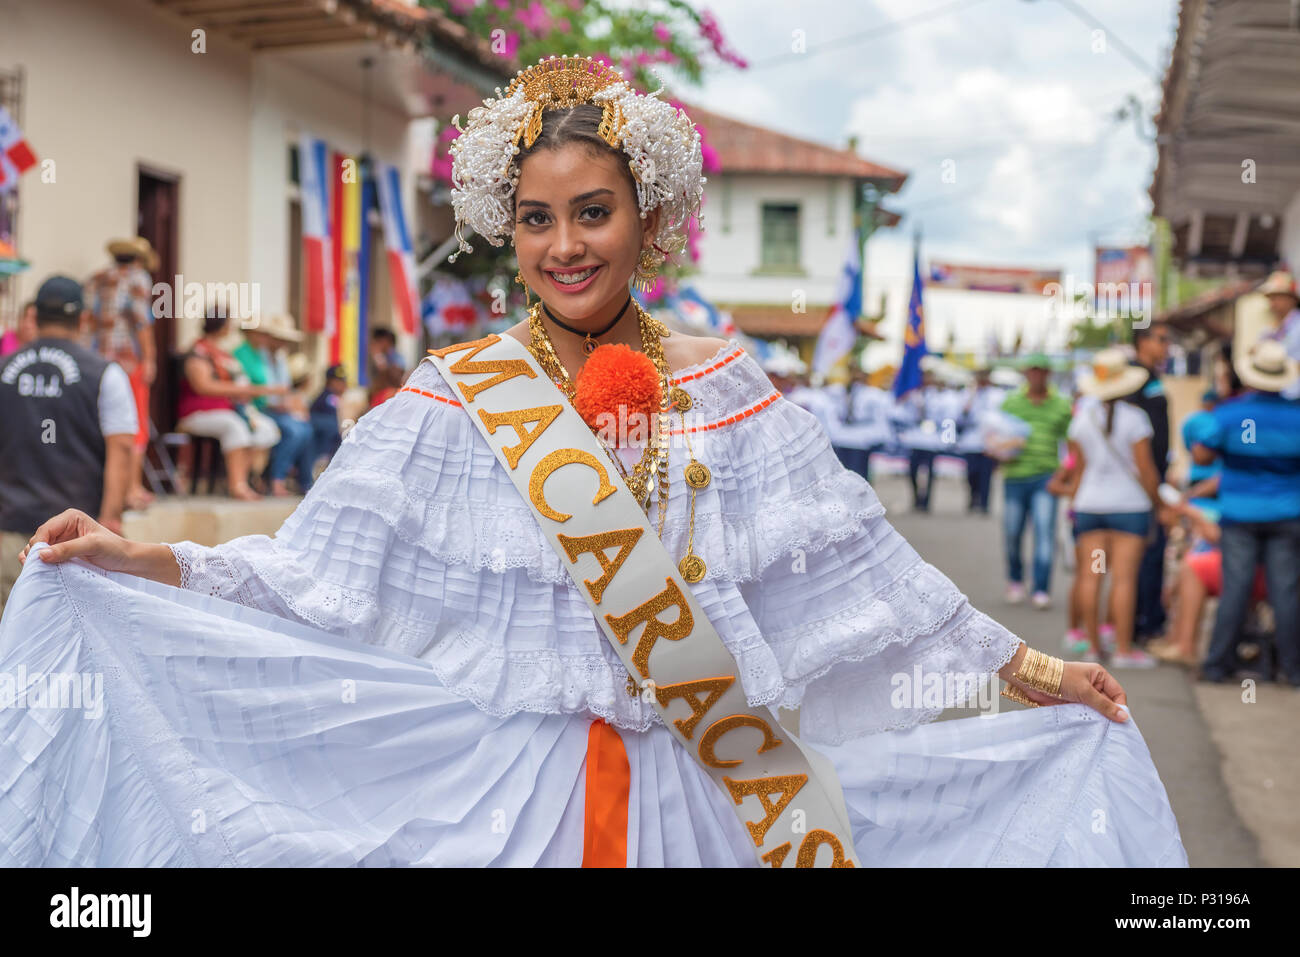 Los Santos, Panama - November 10, 2015: Girl in traditional dress in the parade in La Villa. Festival and parade in La Villa commemorates La Grita de  Stock Photo